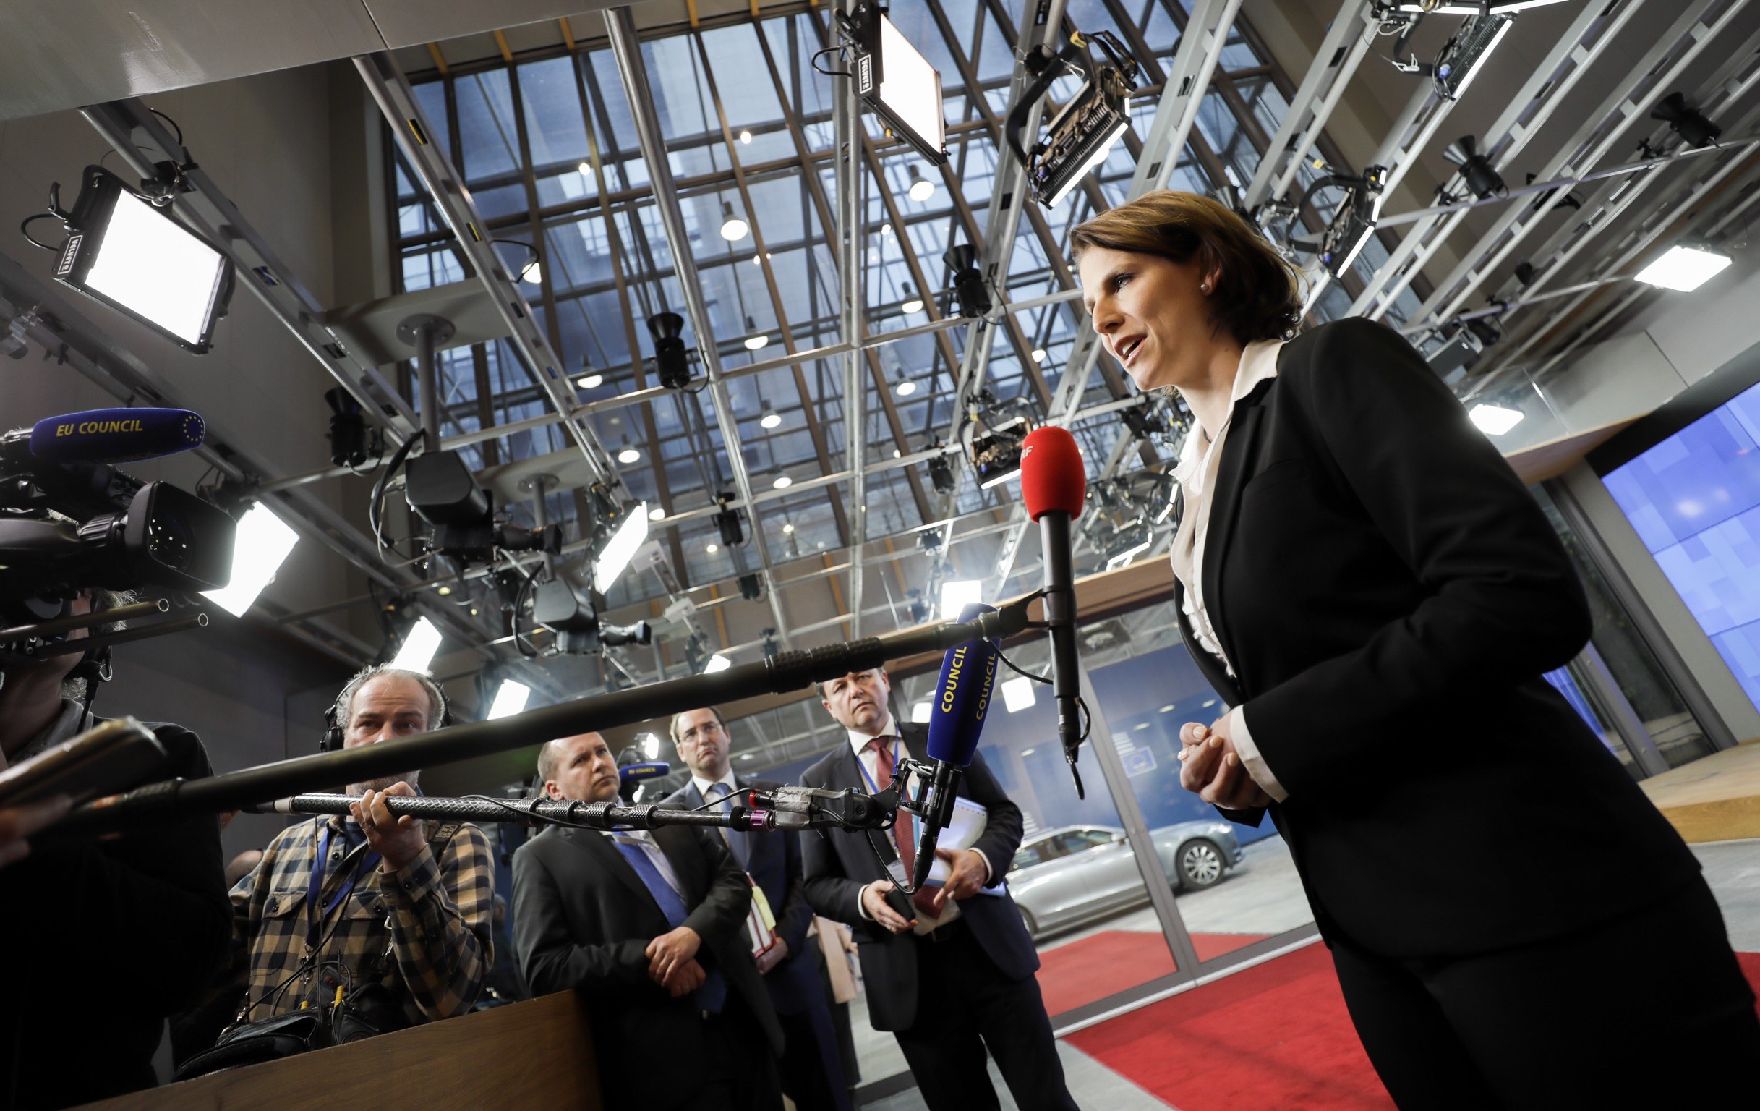 Am 17. Februar 2020 nahm Bundesministerin Karoline Edtstadler am Rat für Allgemeine Angelegenheiten in Brüssel teil. Im Bild beim Doorstep.